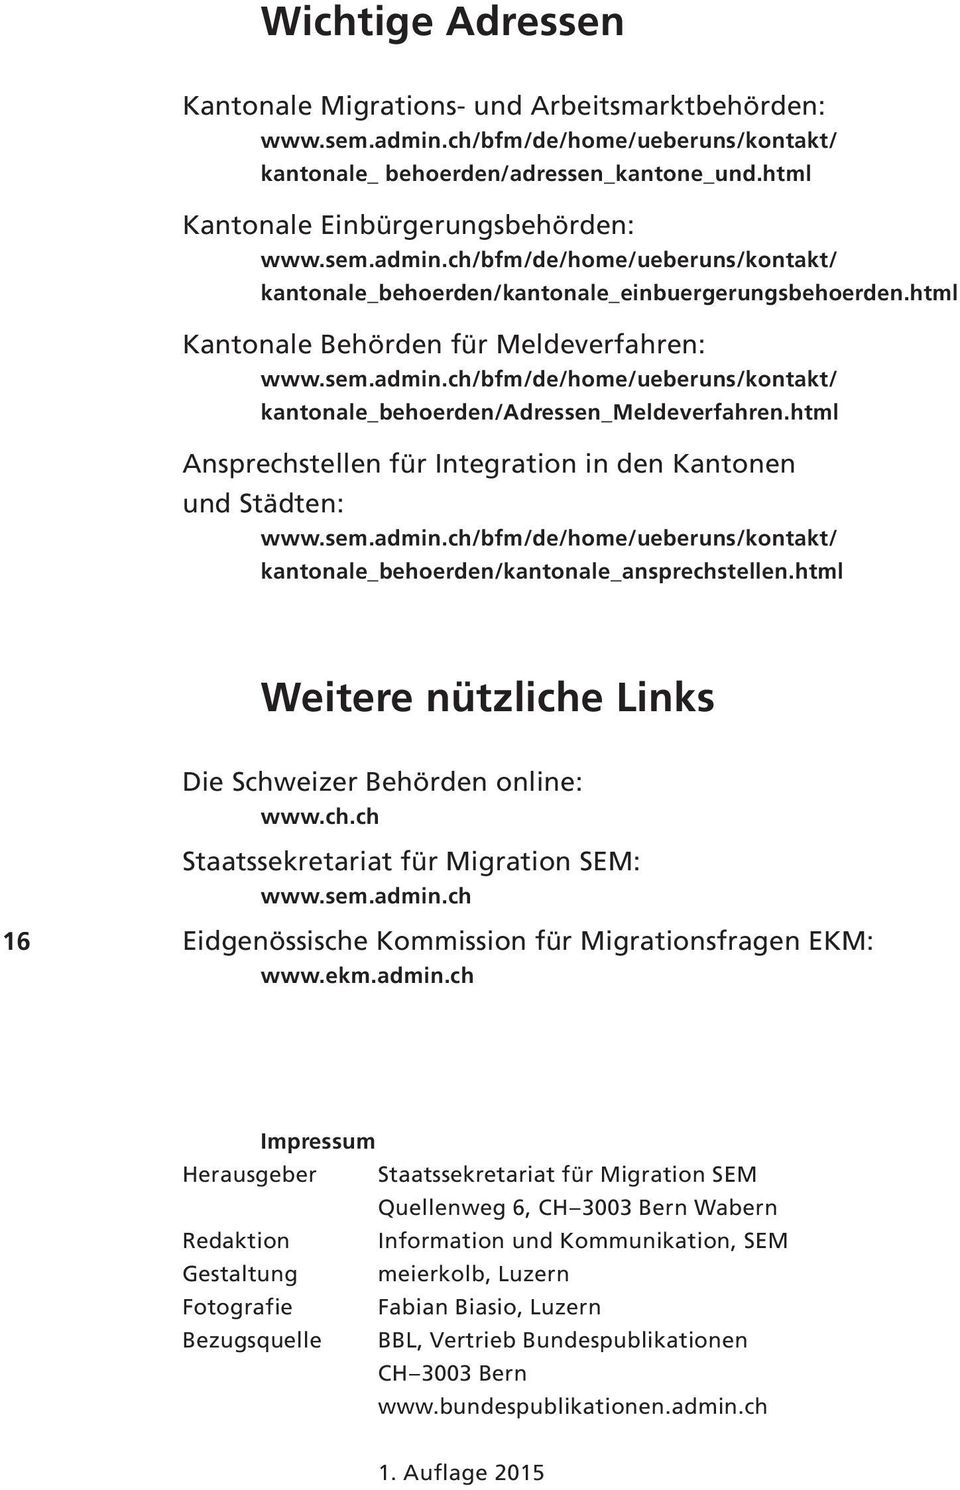 html Ansprechstellen für Integration in den Kantonen und Städten: www.sem.admin.ch/bfm/de/home/ueberuns/kontakt/ kantonale_behoerden/kantonale_ansprechstellen.